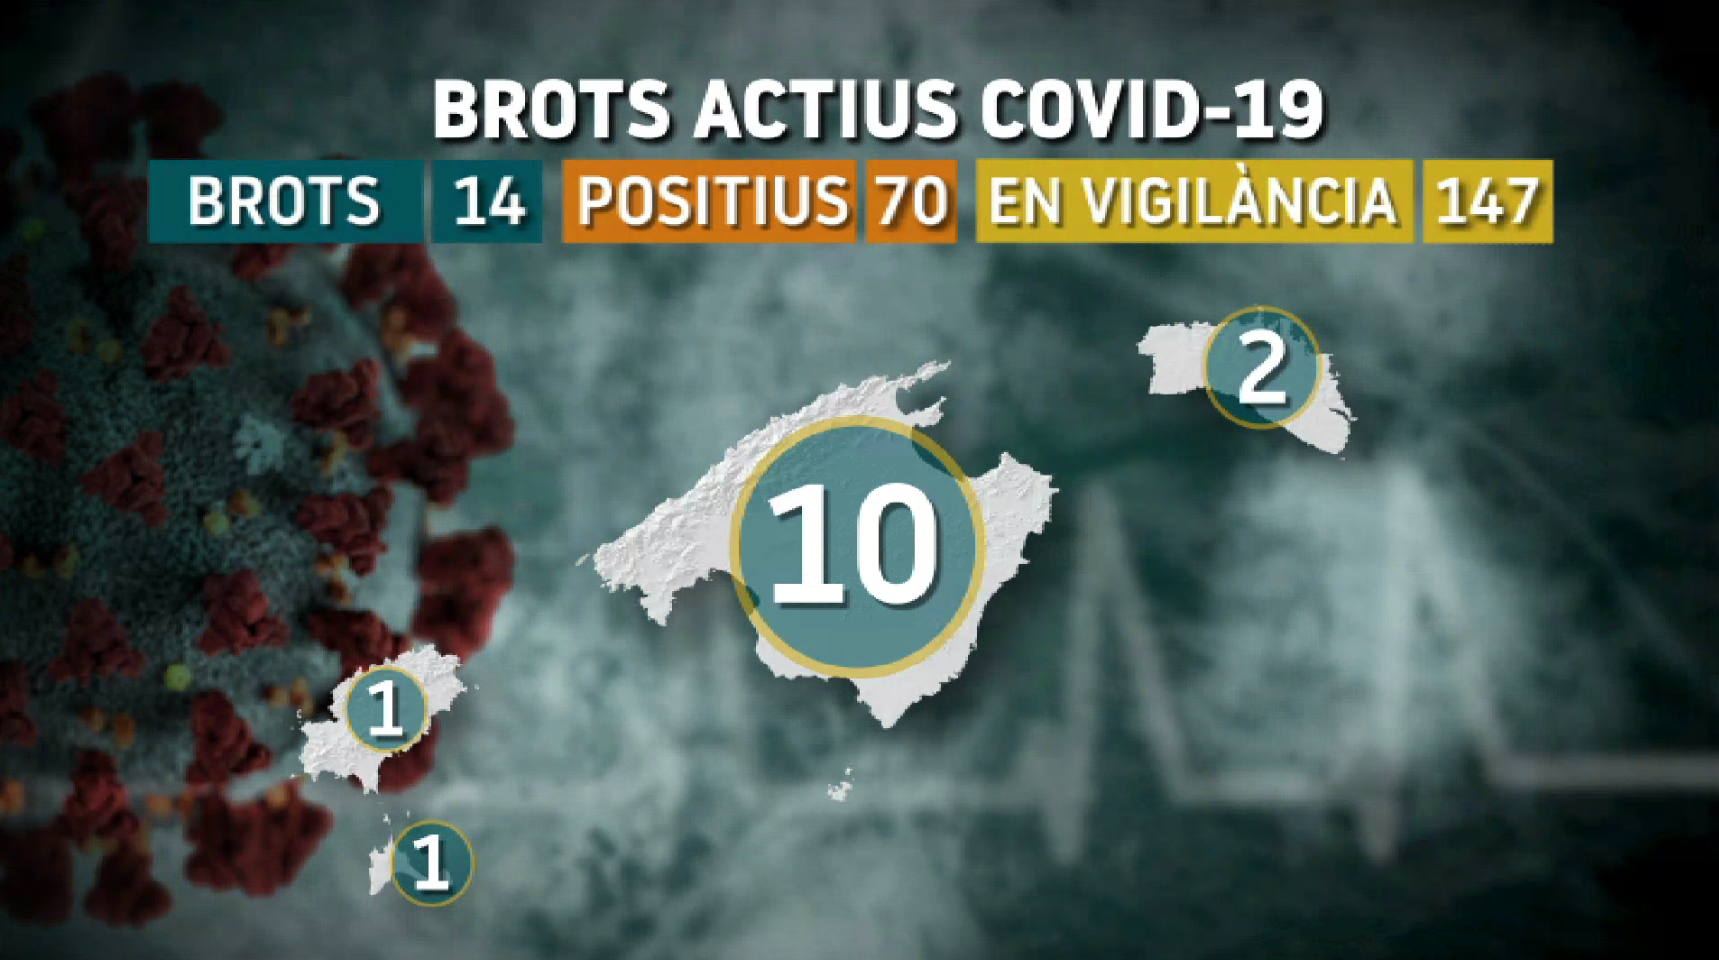 Balears registra 4 brots en una setmana; 14 brots actius en total